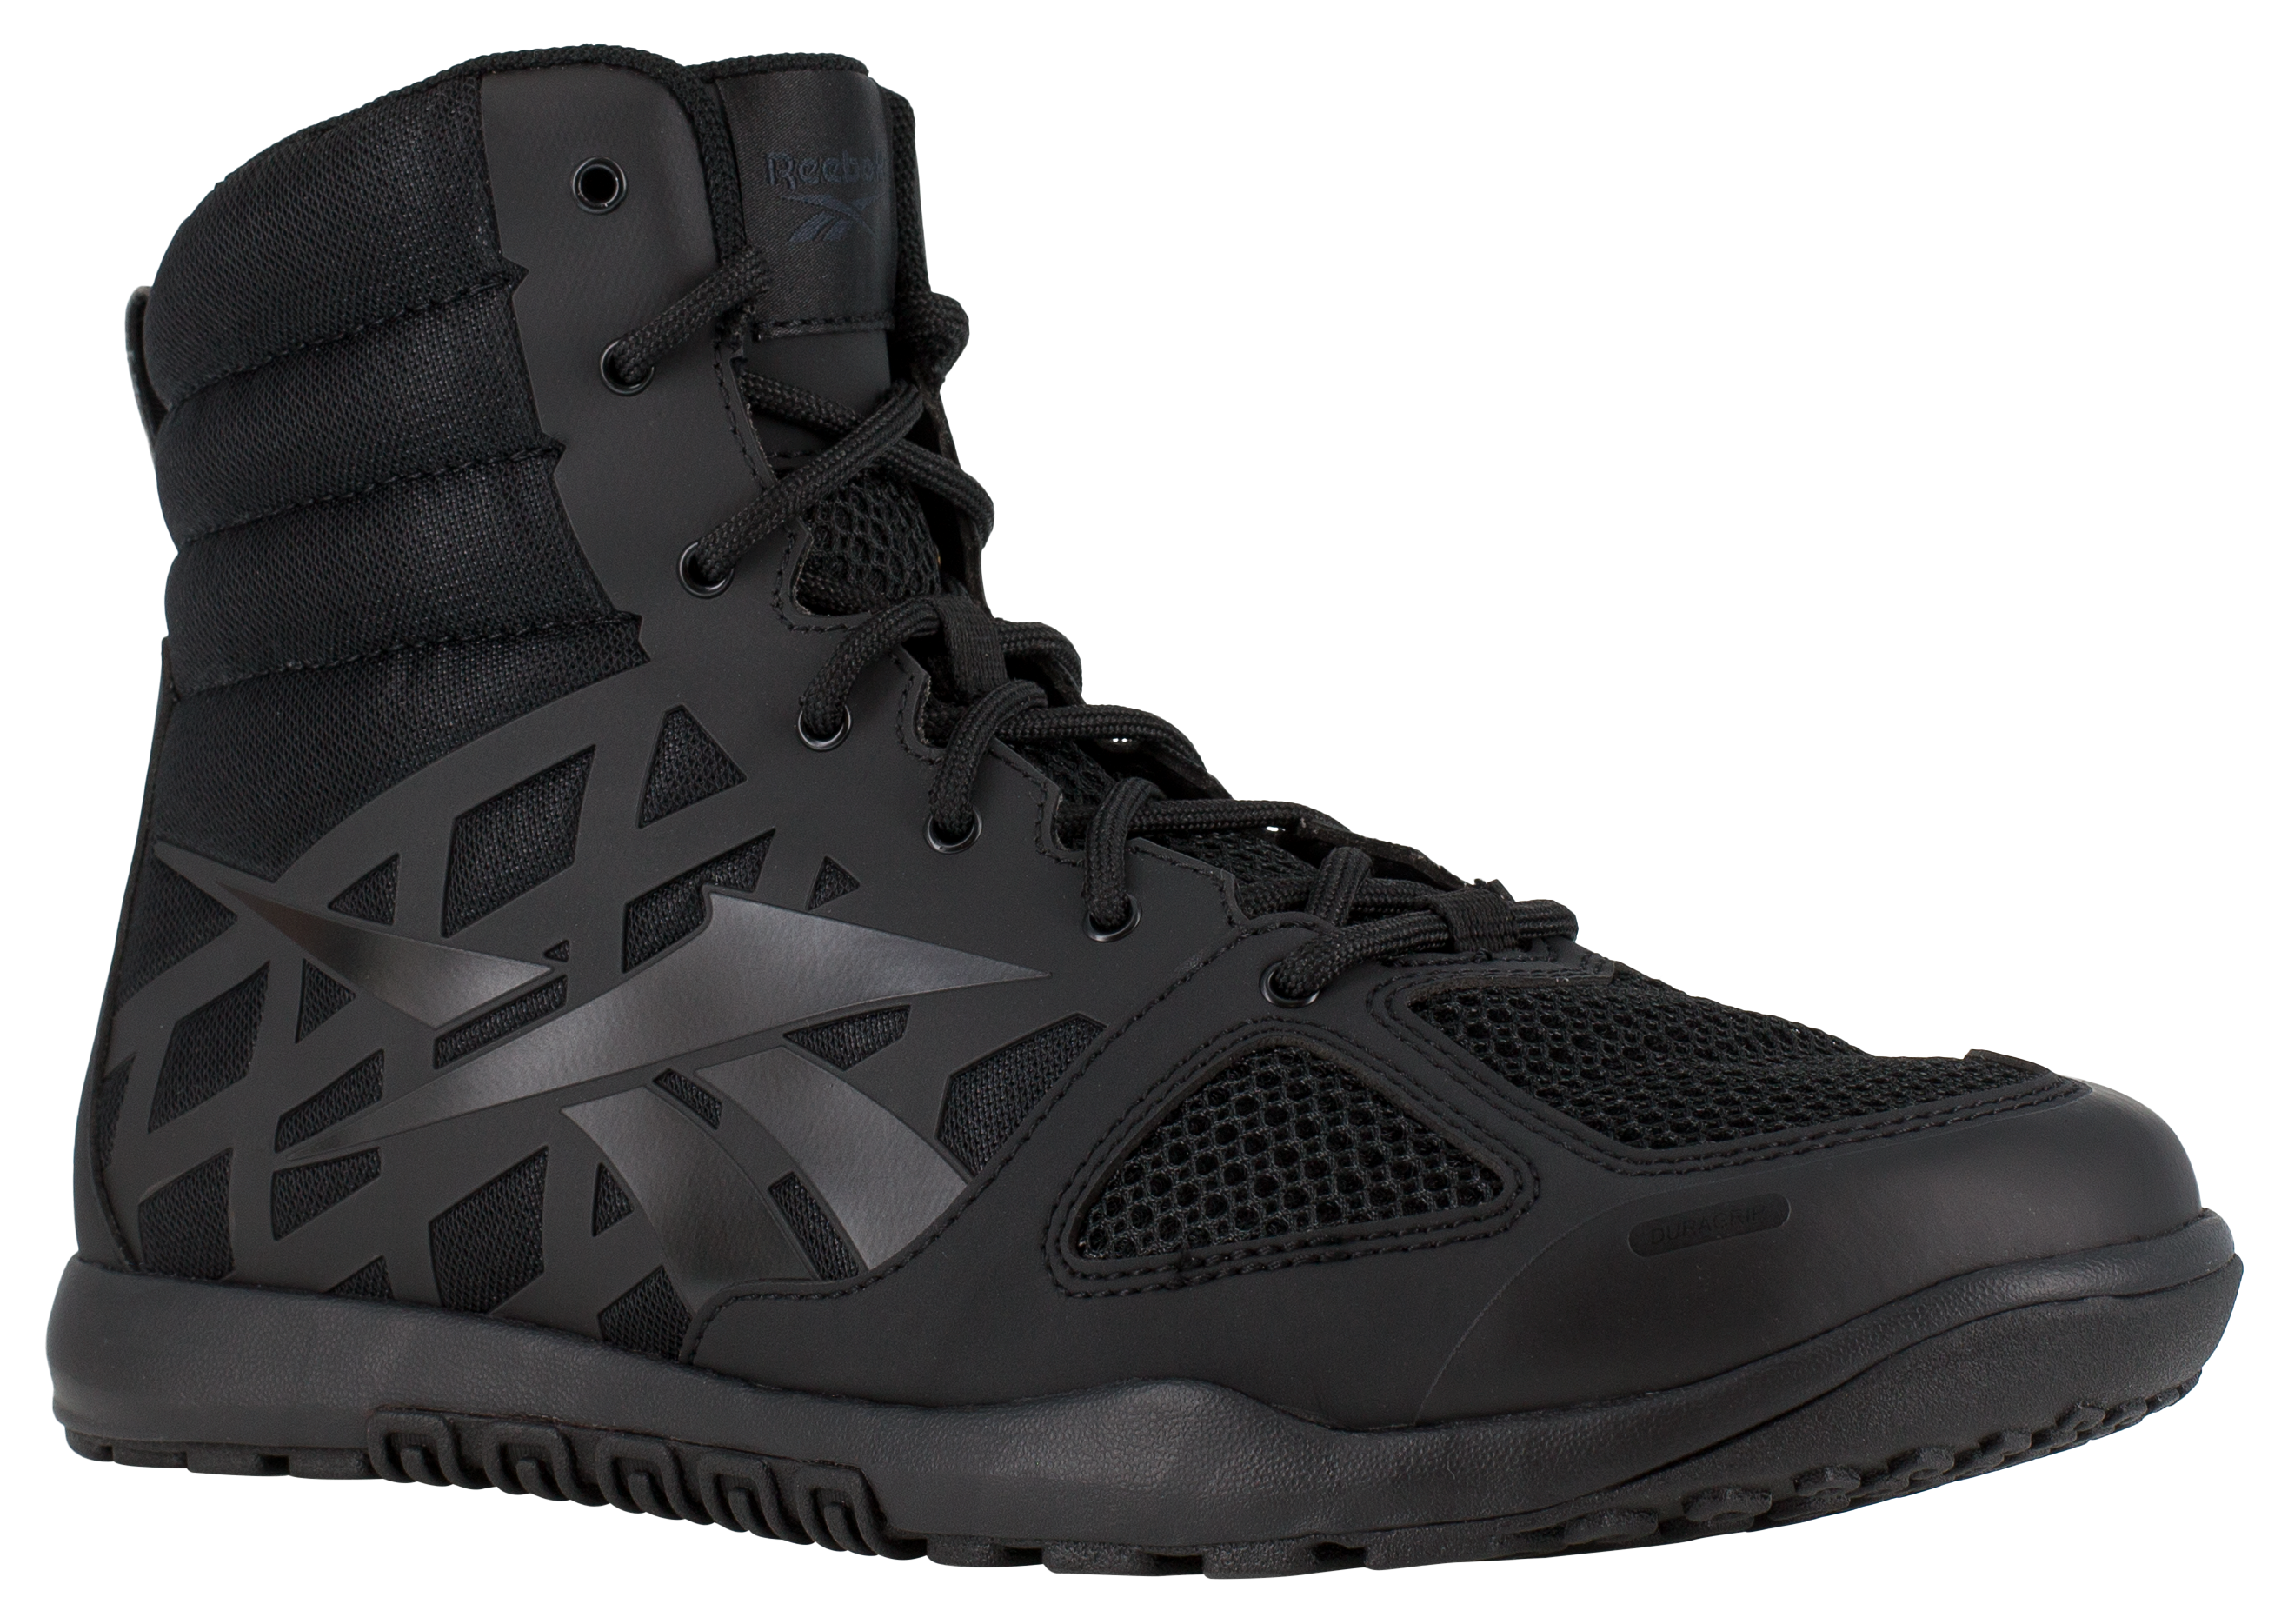 Reebok Nano Tactical 6″ Tactical Boots for Men - Black - 9.5M